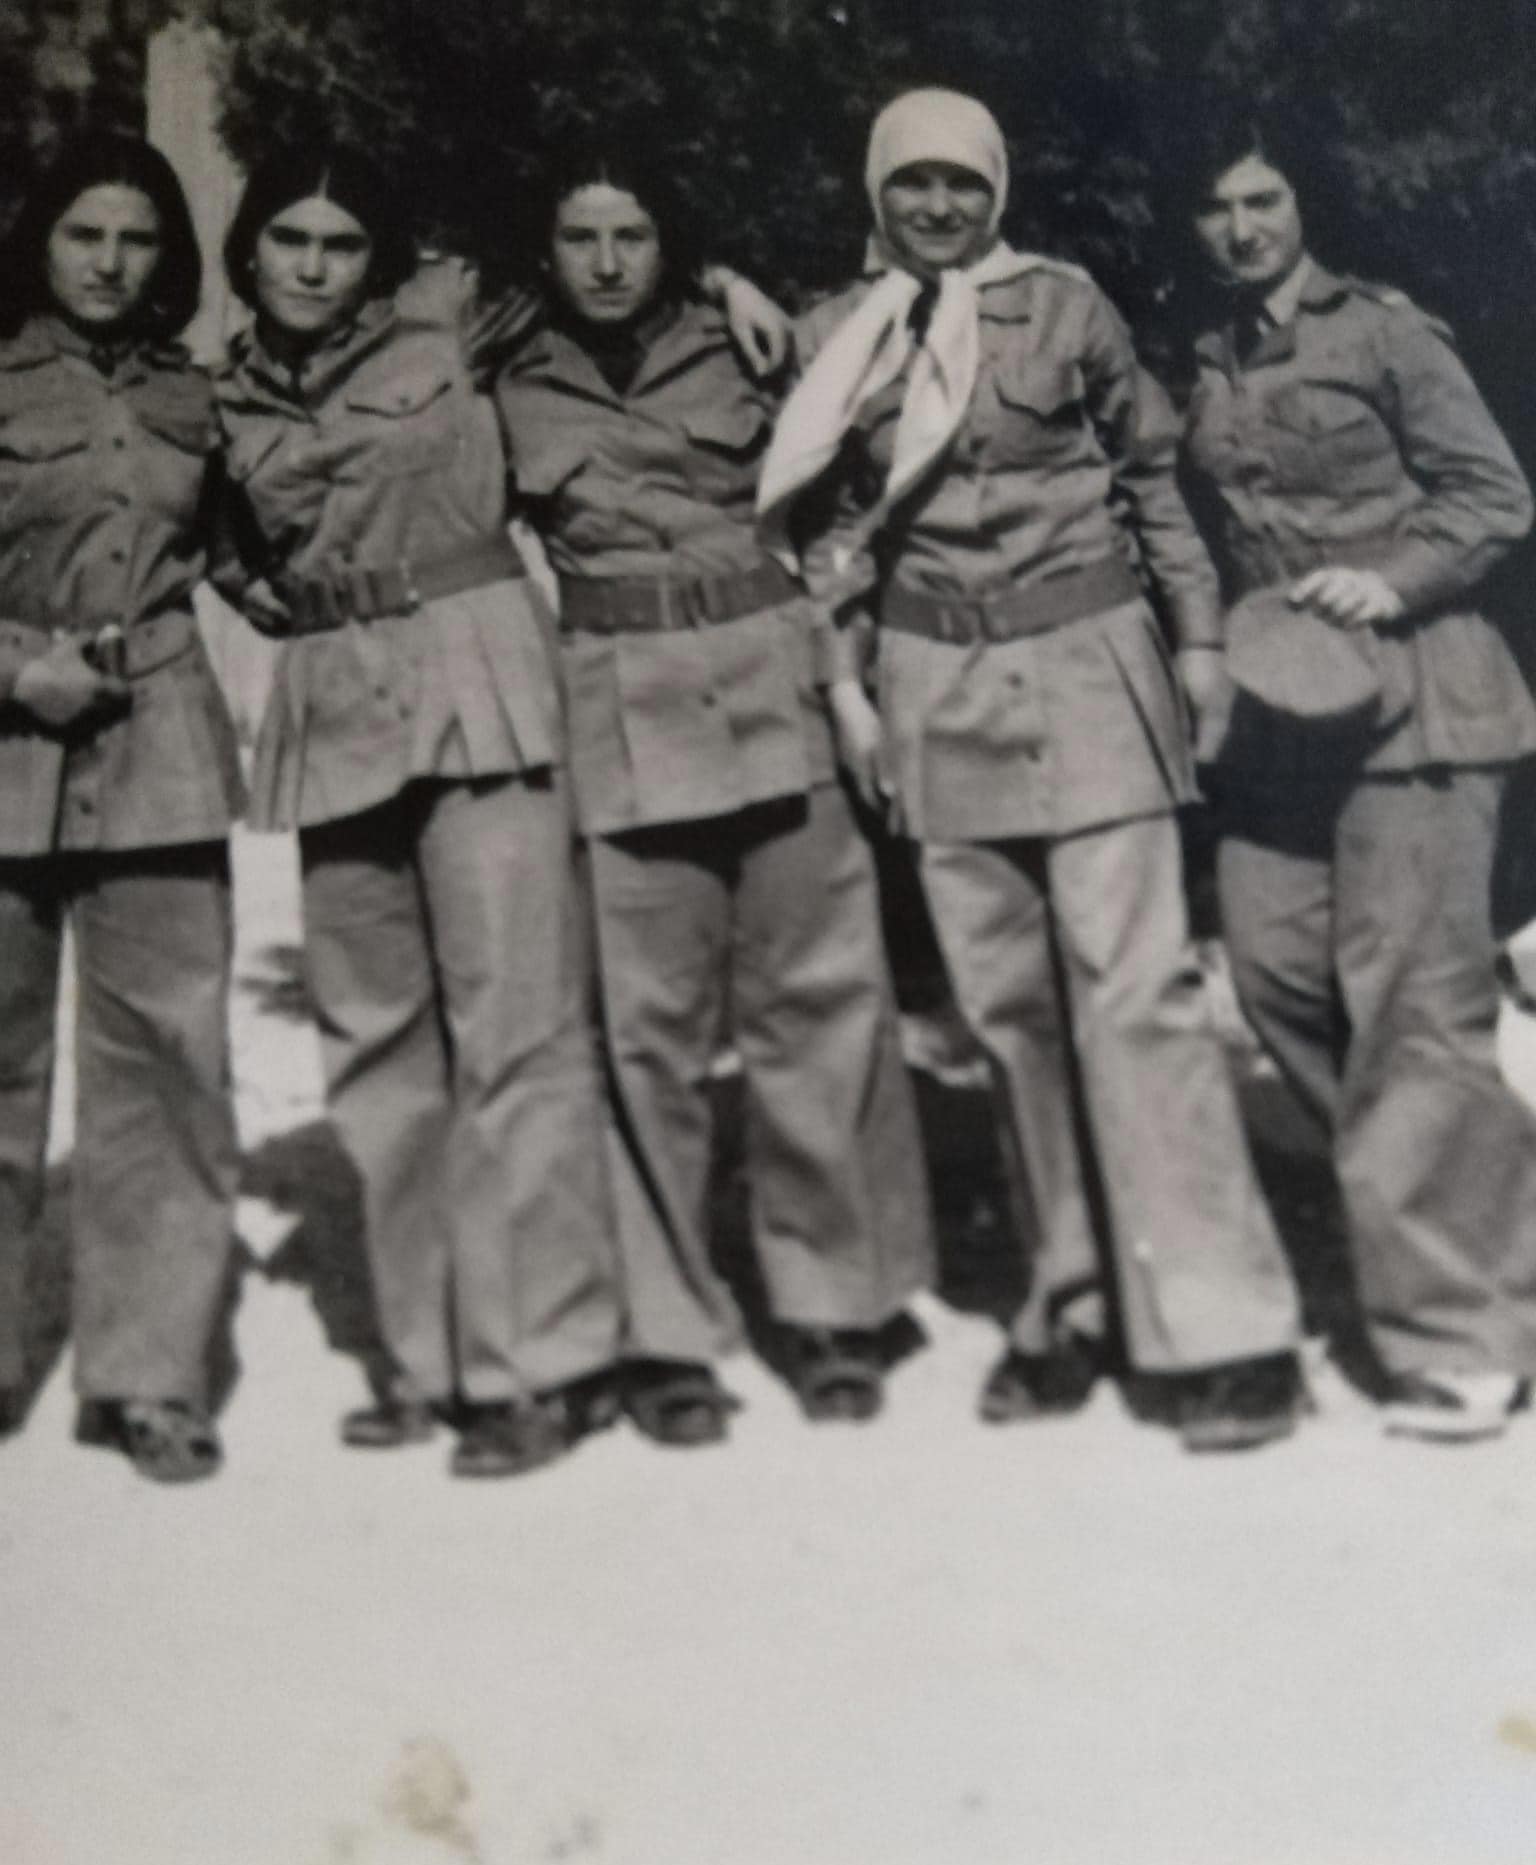 التاريخ السوري المعاصر - طالبات في اللباس المدرسي في سلمية سبعينيات القرن العشرين